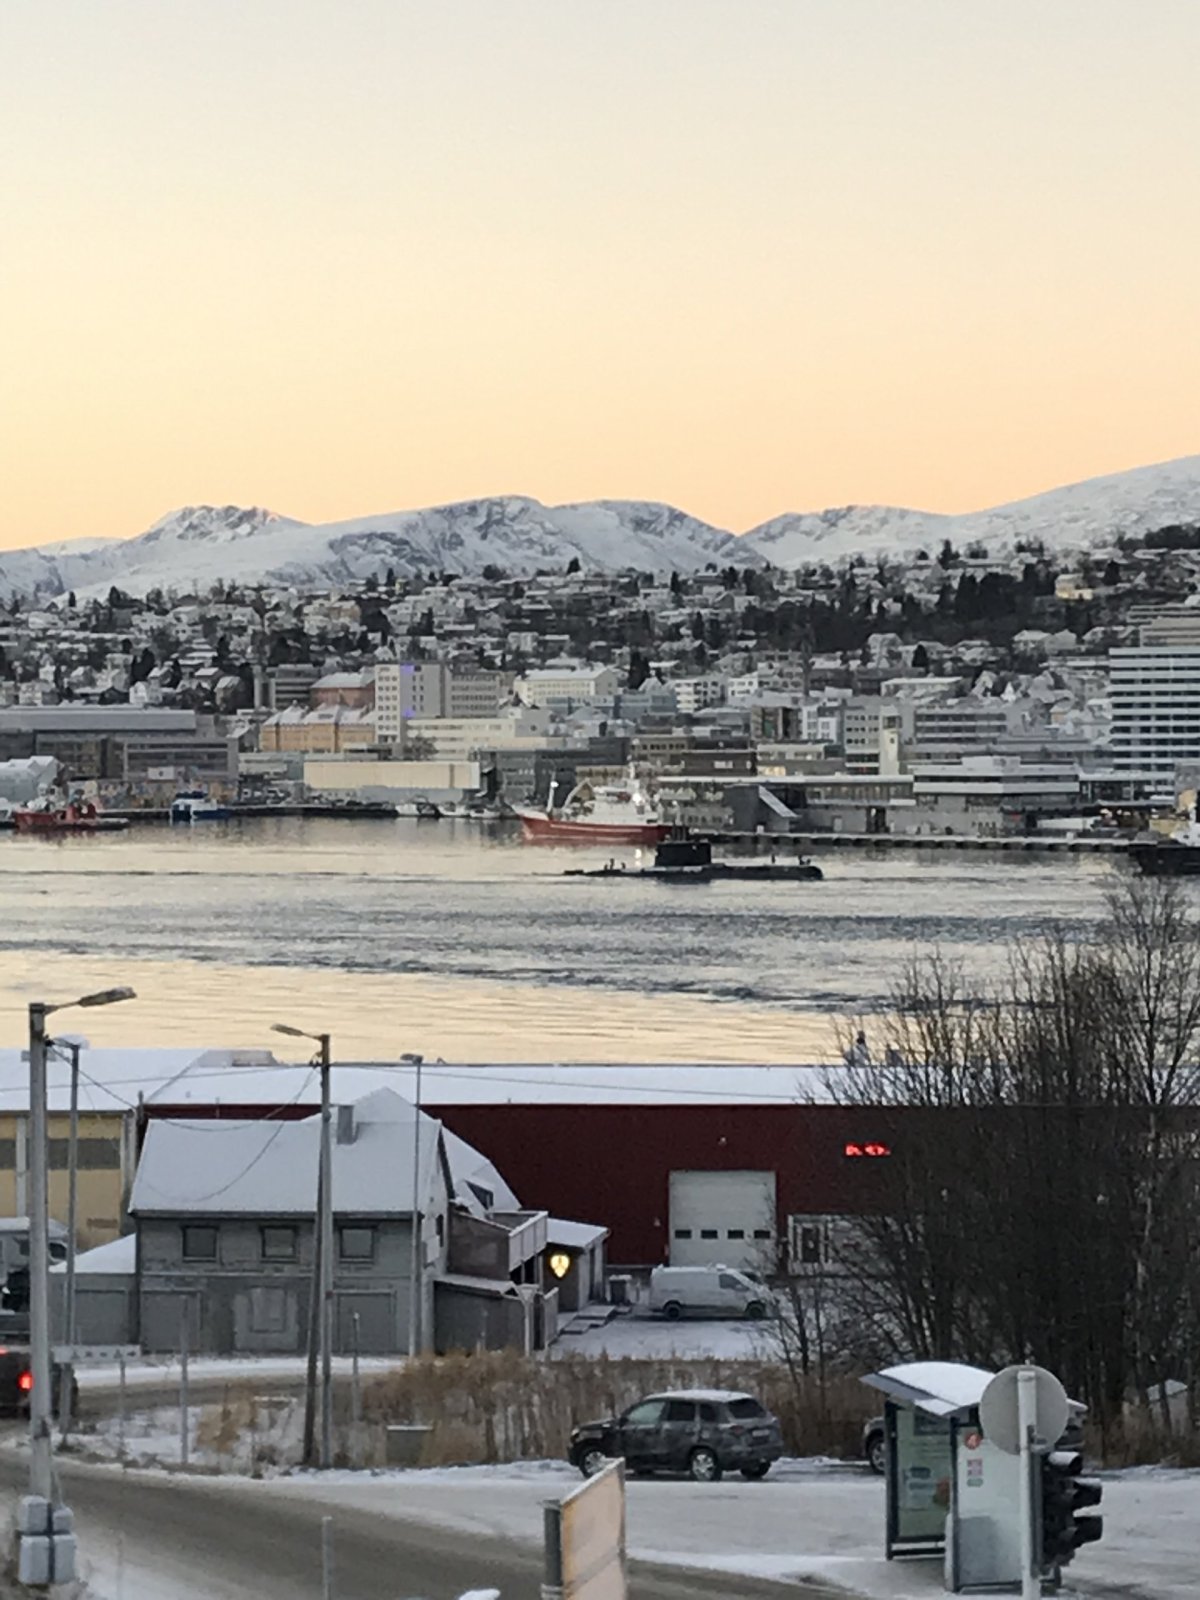 Náhodná ponorka, kterou náhodně zrovna v tu chvíli tahali po fjordu.